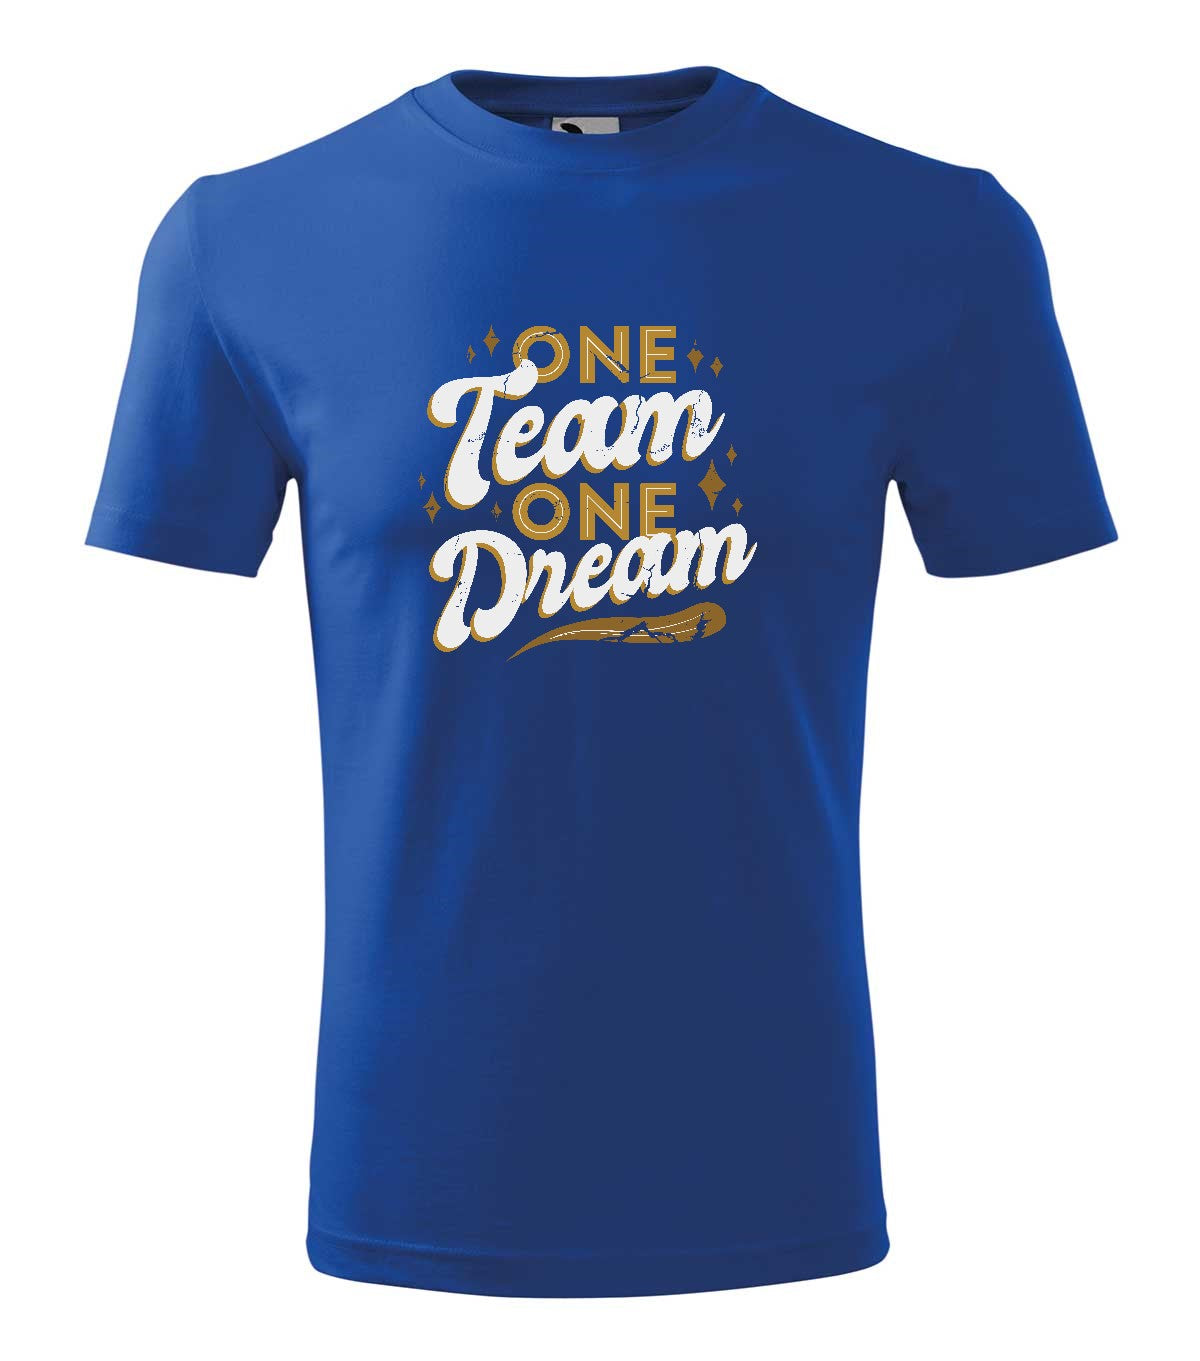 One team one dream  férfi technikai póló